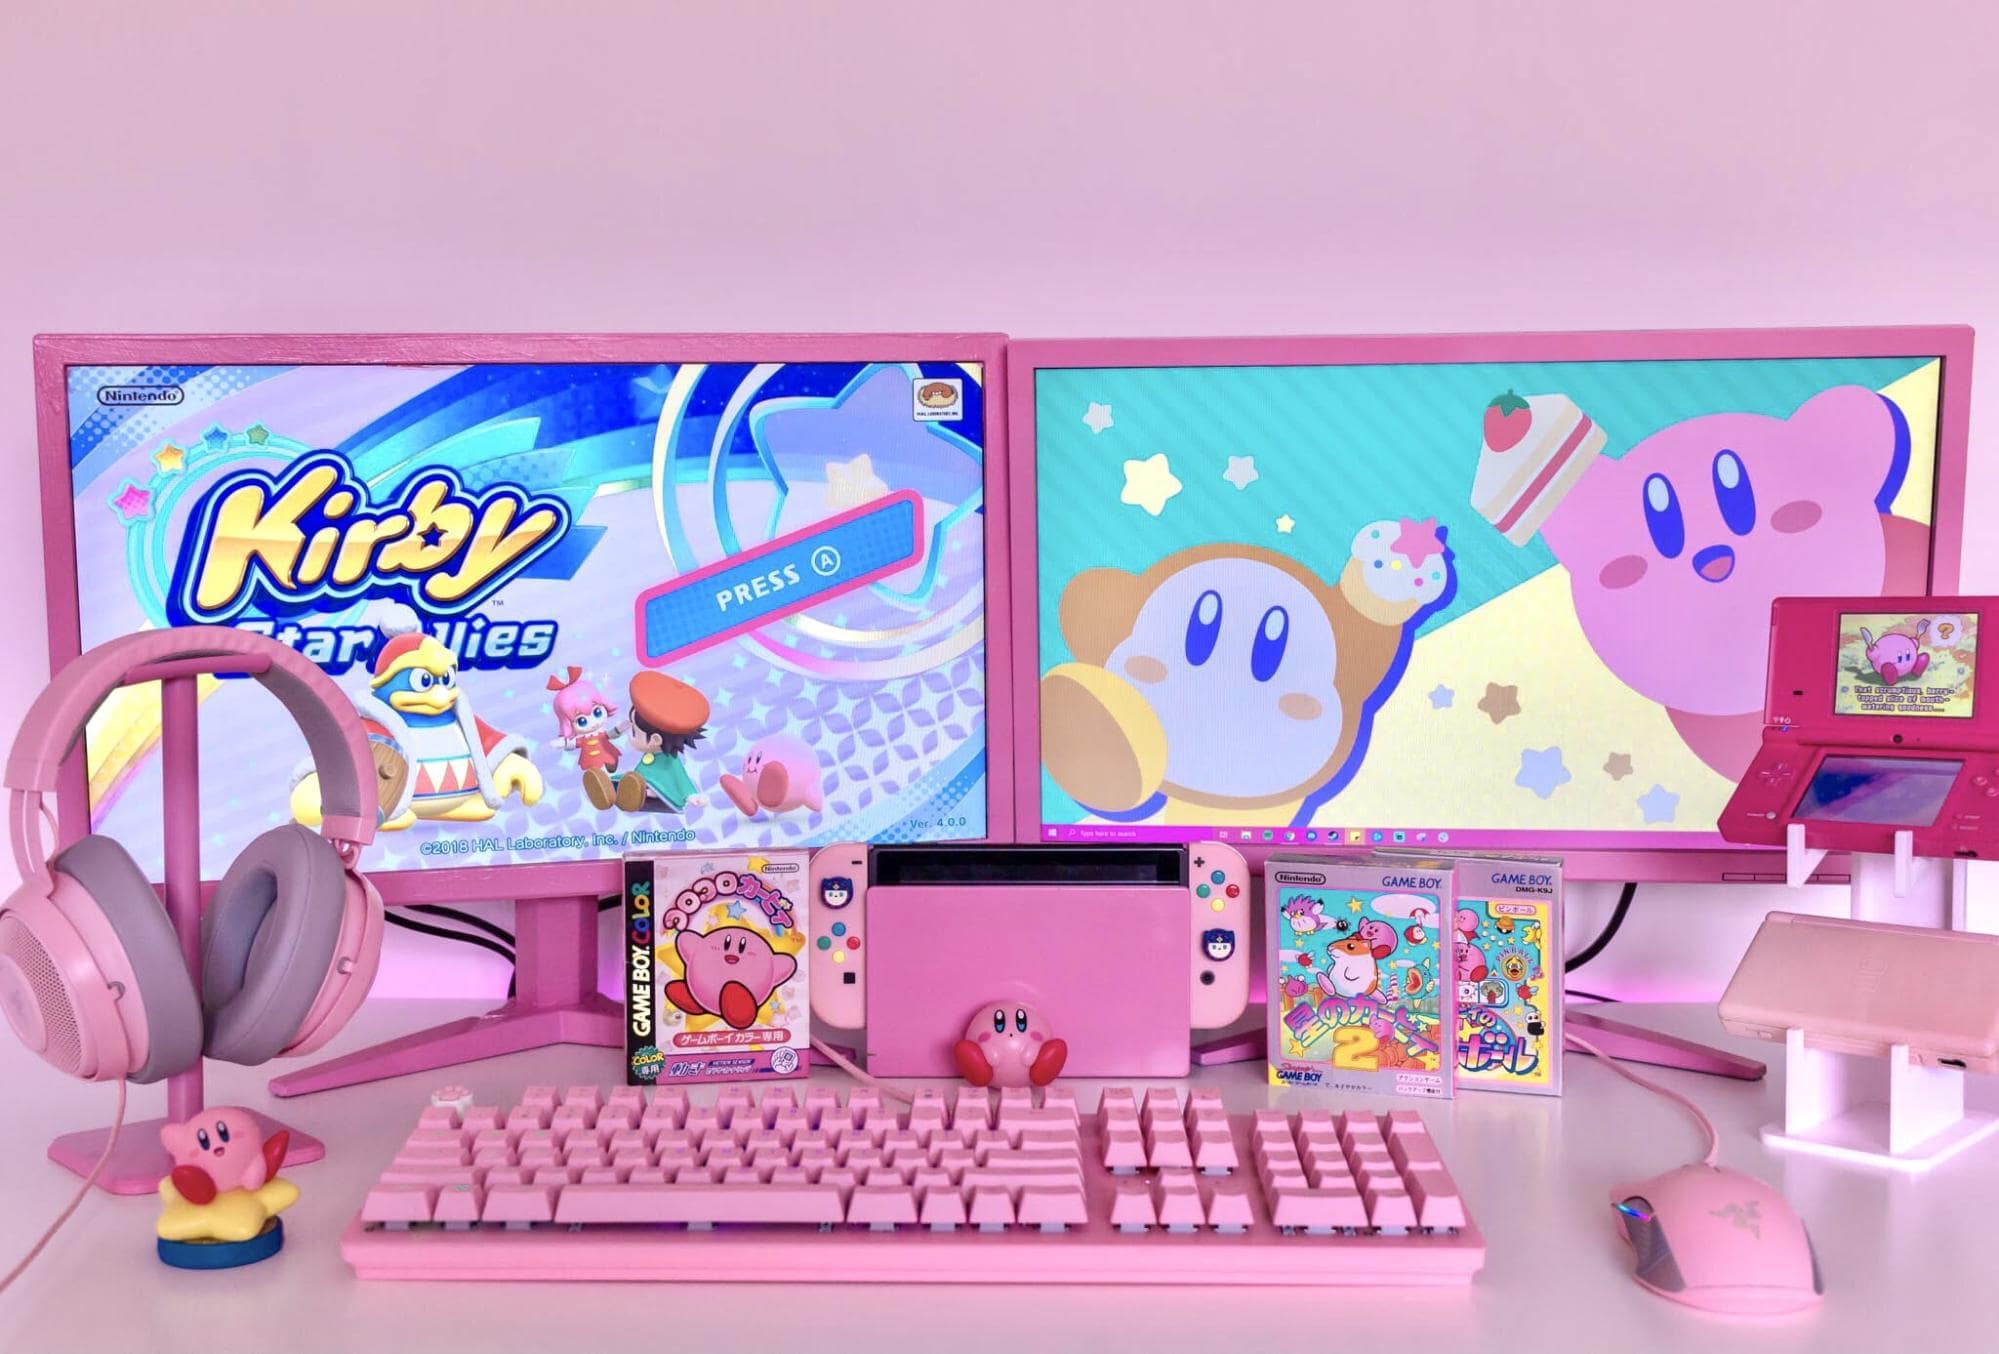 A pink gaming desk setup